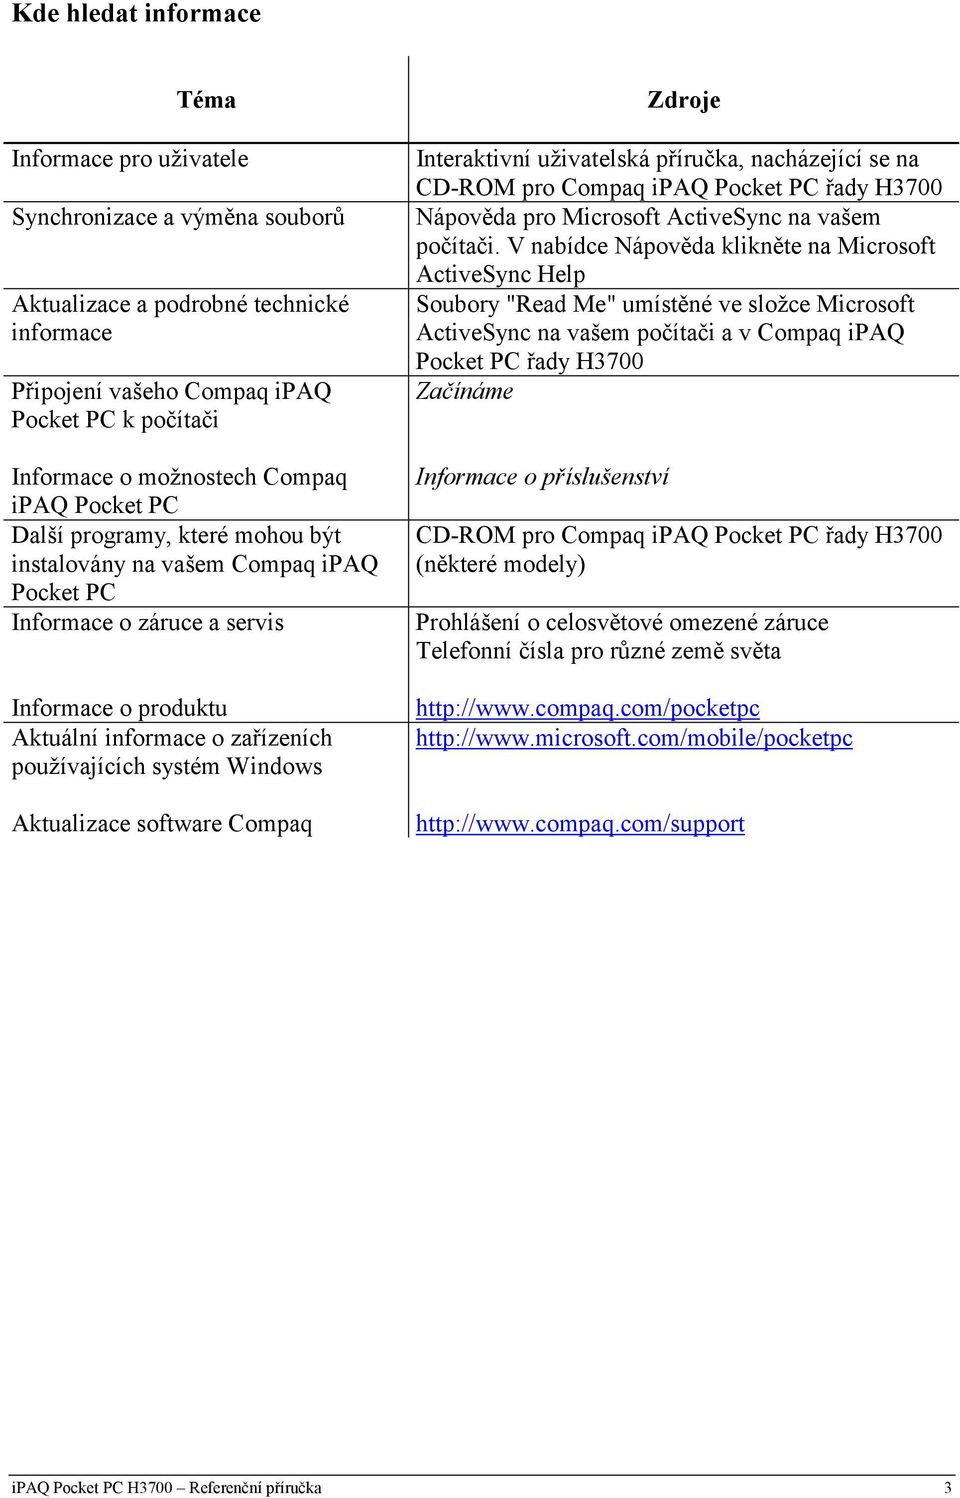 Windows Aktualizace software Compaq Zdroje Interaktivní uživatelská příručka, nacházející se na CD-ROM pro Compaq ipaq Pocket PC řady H3700 Nápověda pro Microsoft ActiveSync na vašem počítači.